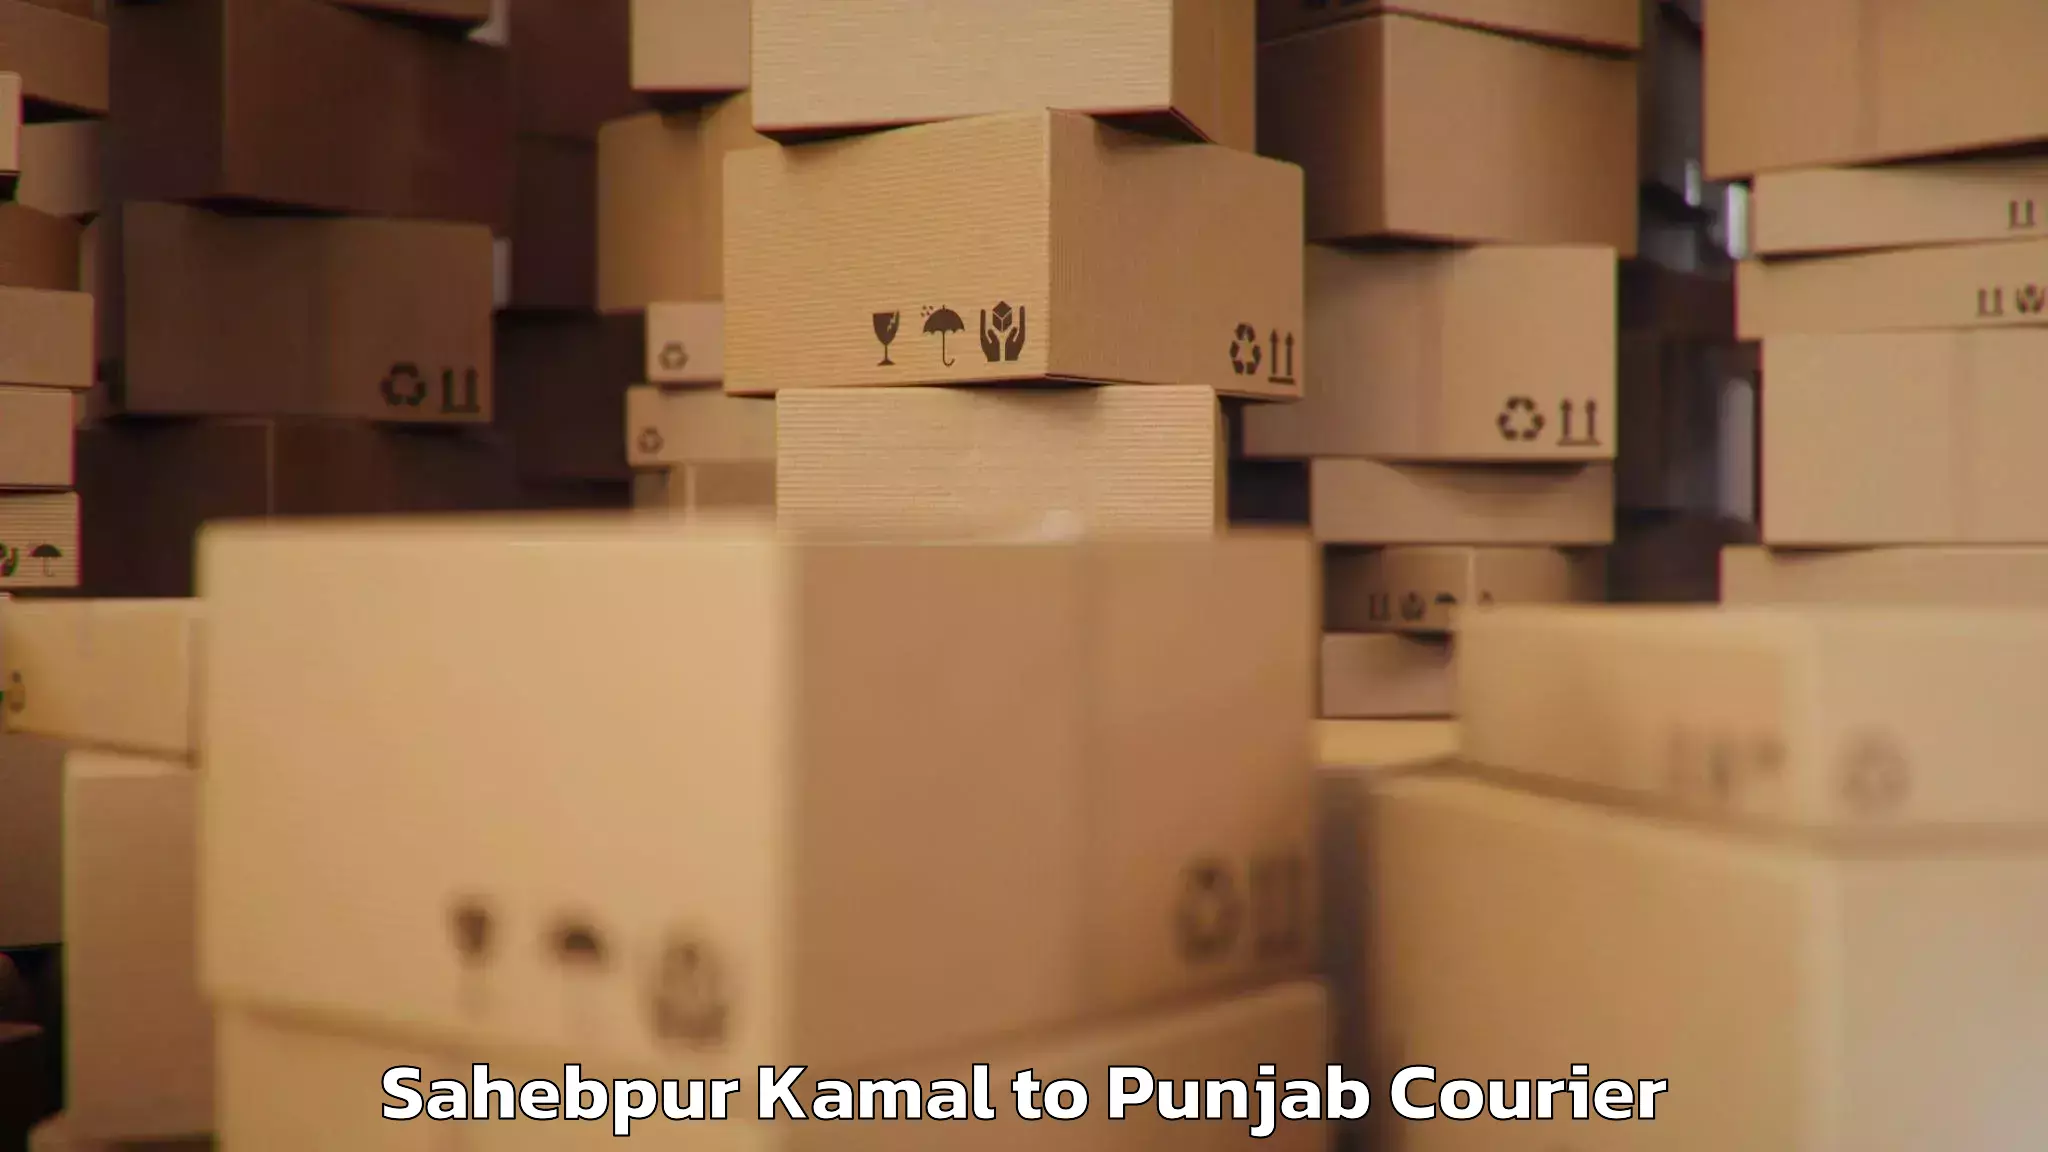 Baggage delivery solutions Sahebpur Kamal to Fazilka